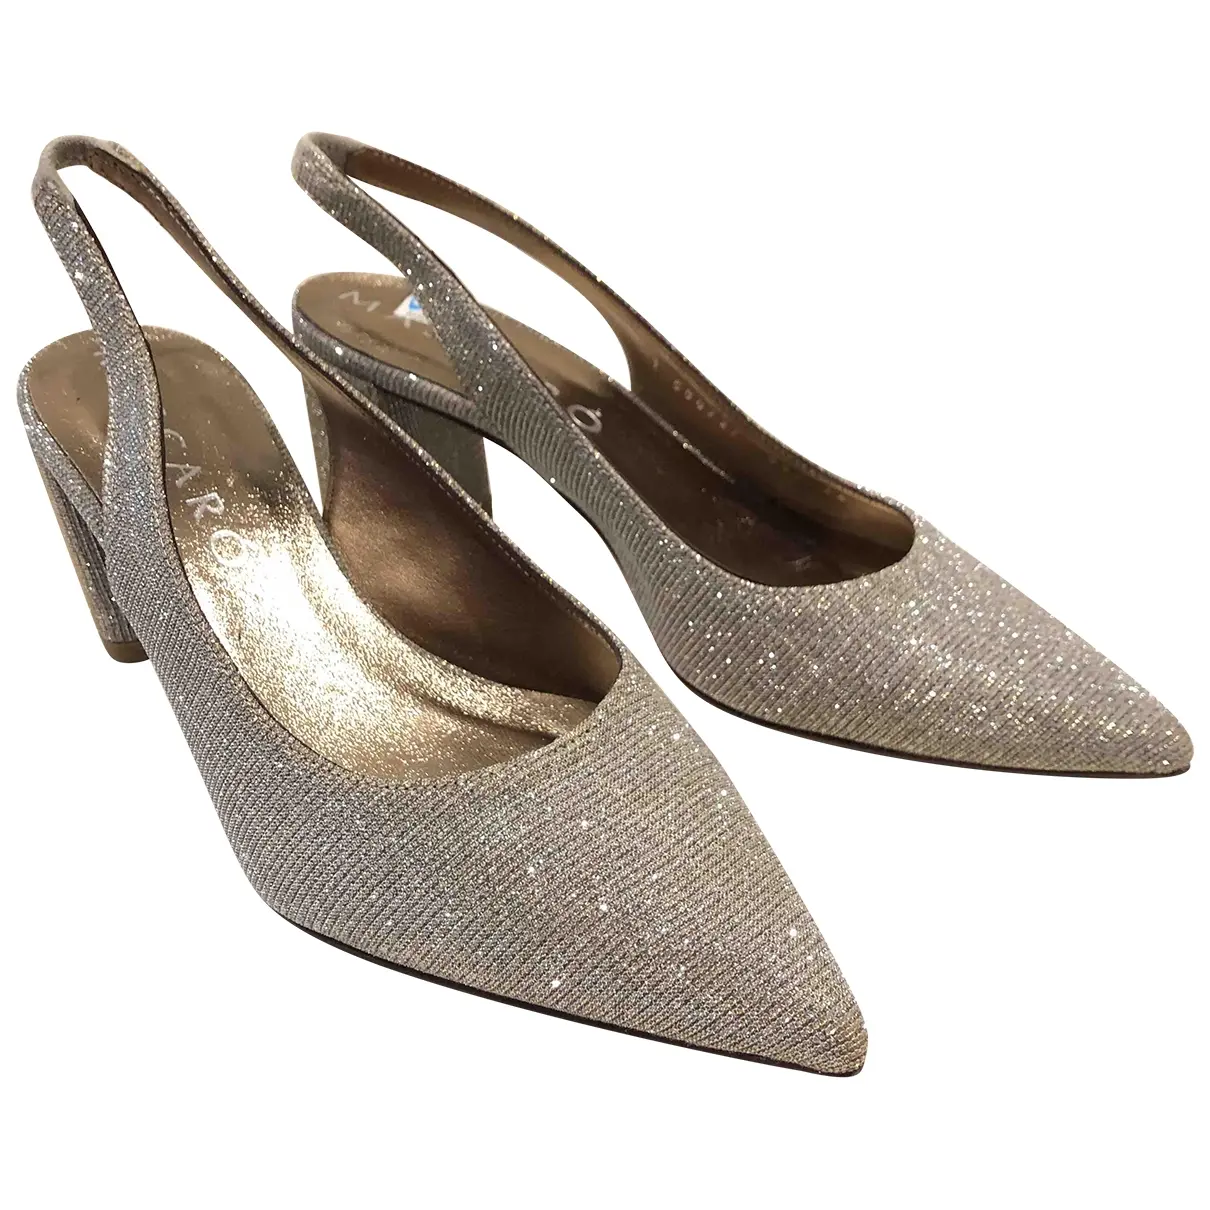 Leather heels Jaime Mascaro